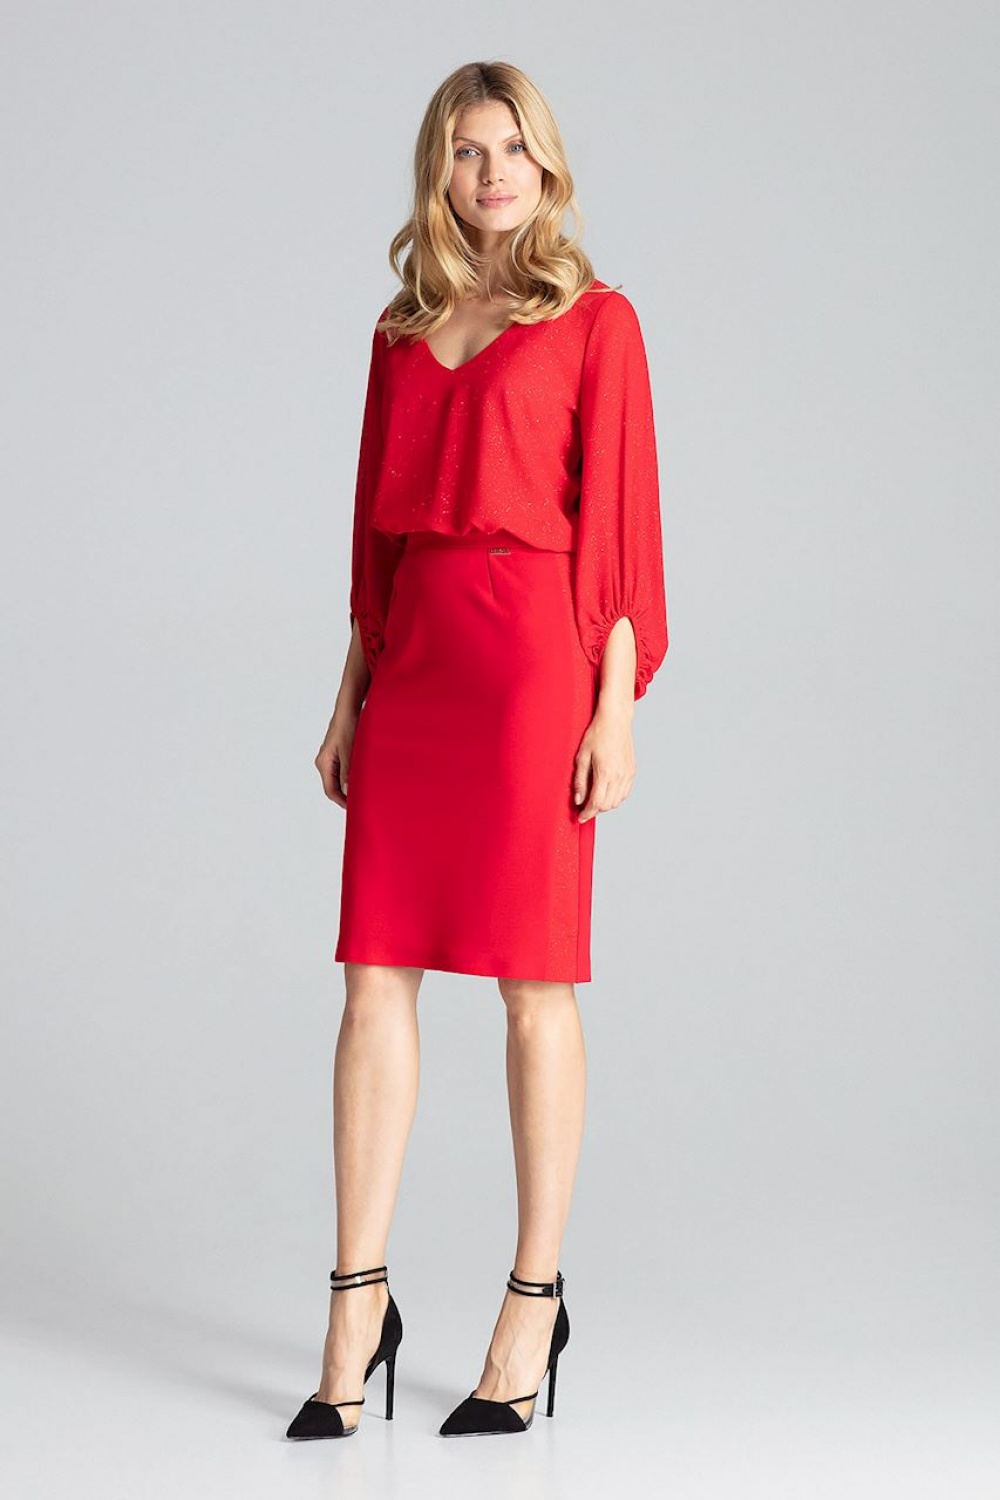  Skirt model 138286 Figl  red